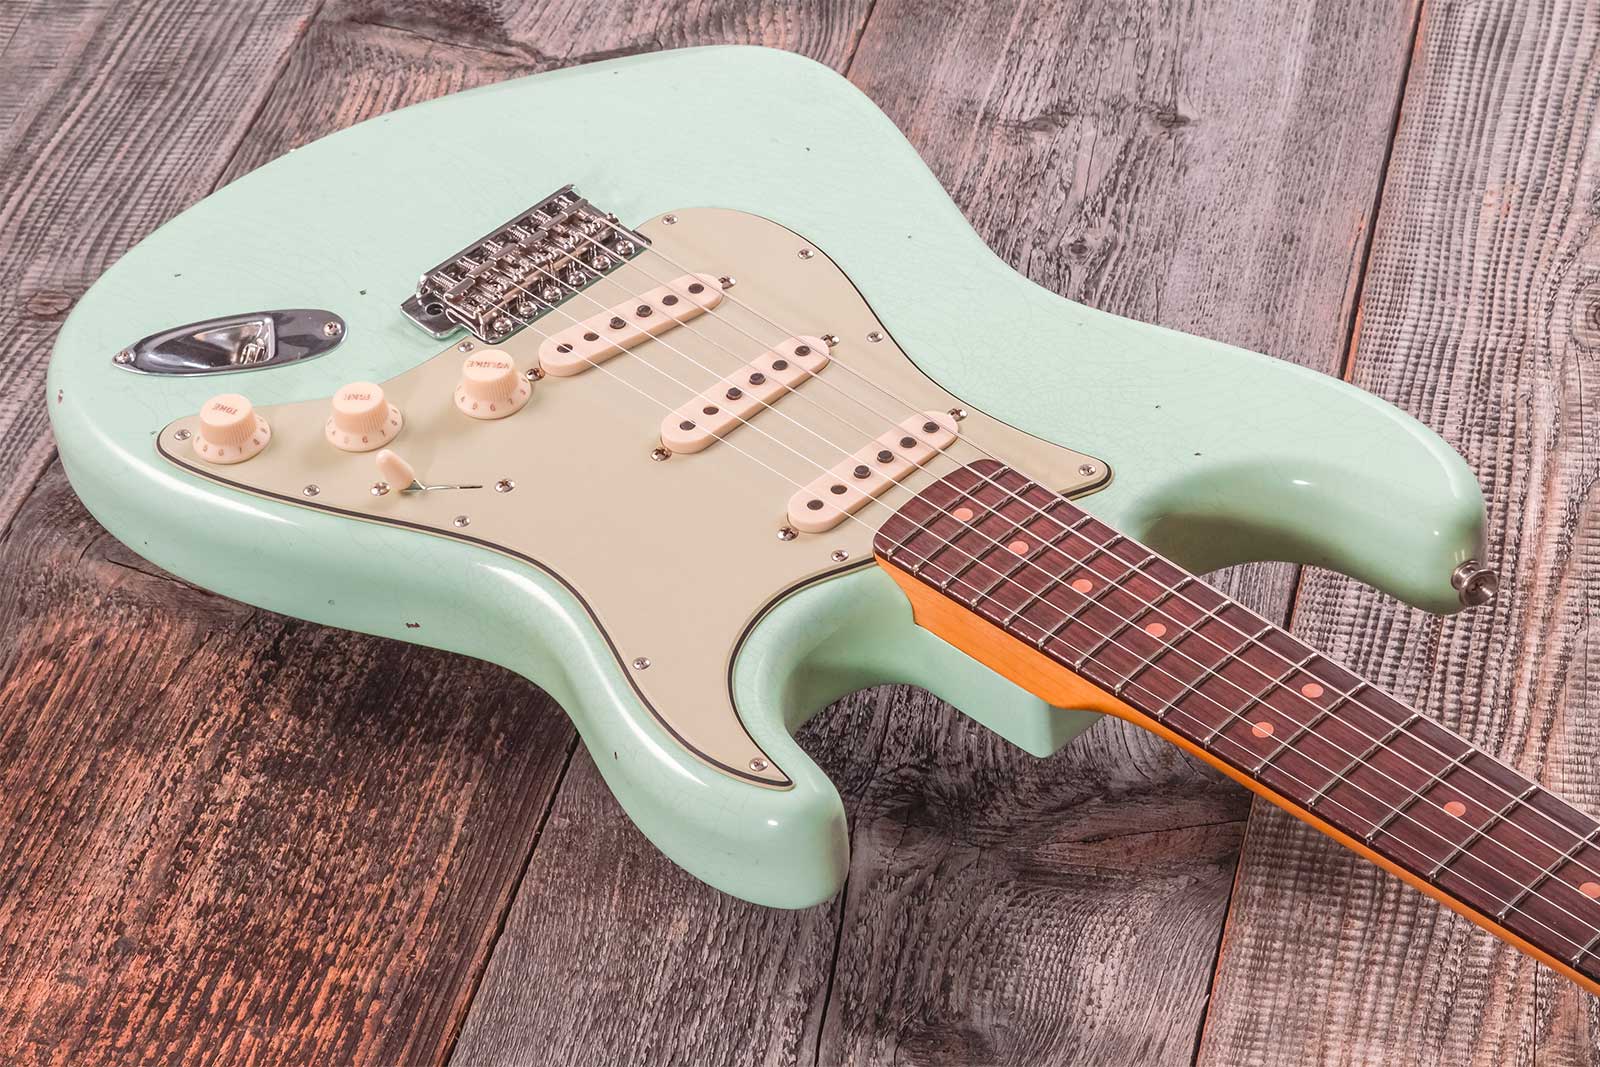 Fender Custom Shop Strat 1964 3s Trem Rw #cz579326 - Journey Man Relic Aged Surf Green - Elektrische gitaar in Str-vorm - Variation 4